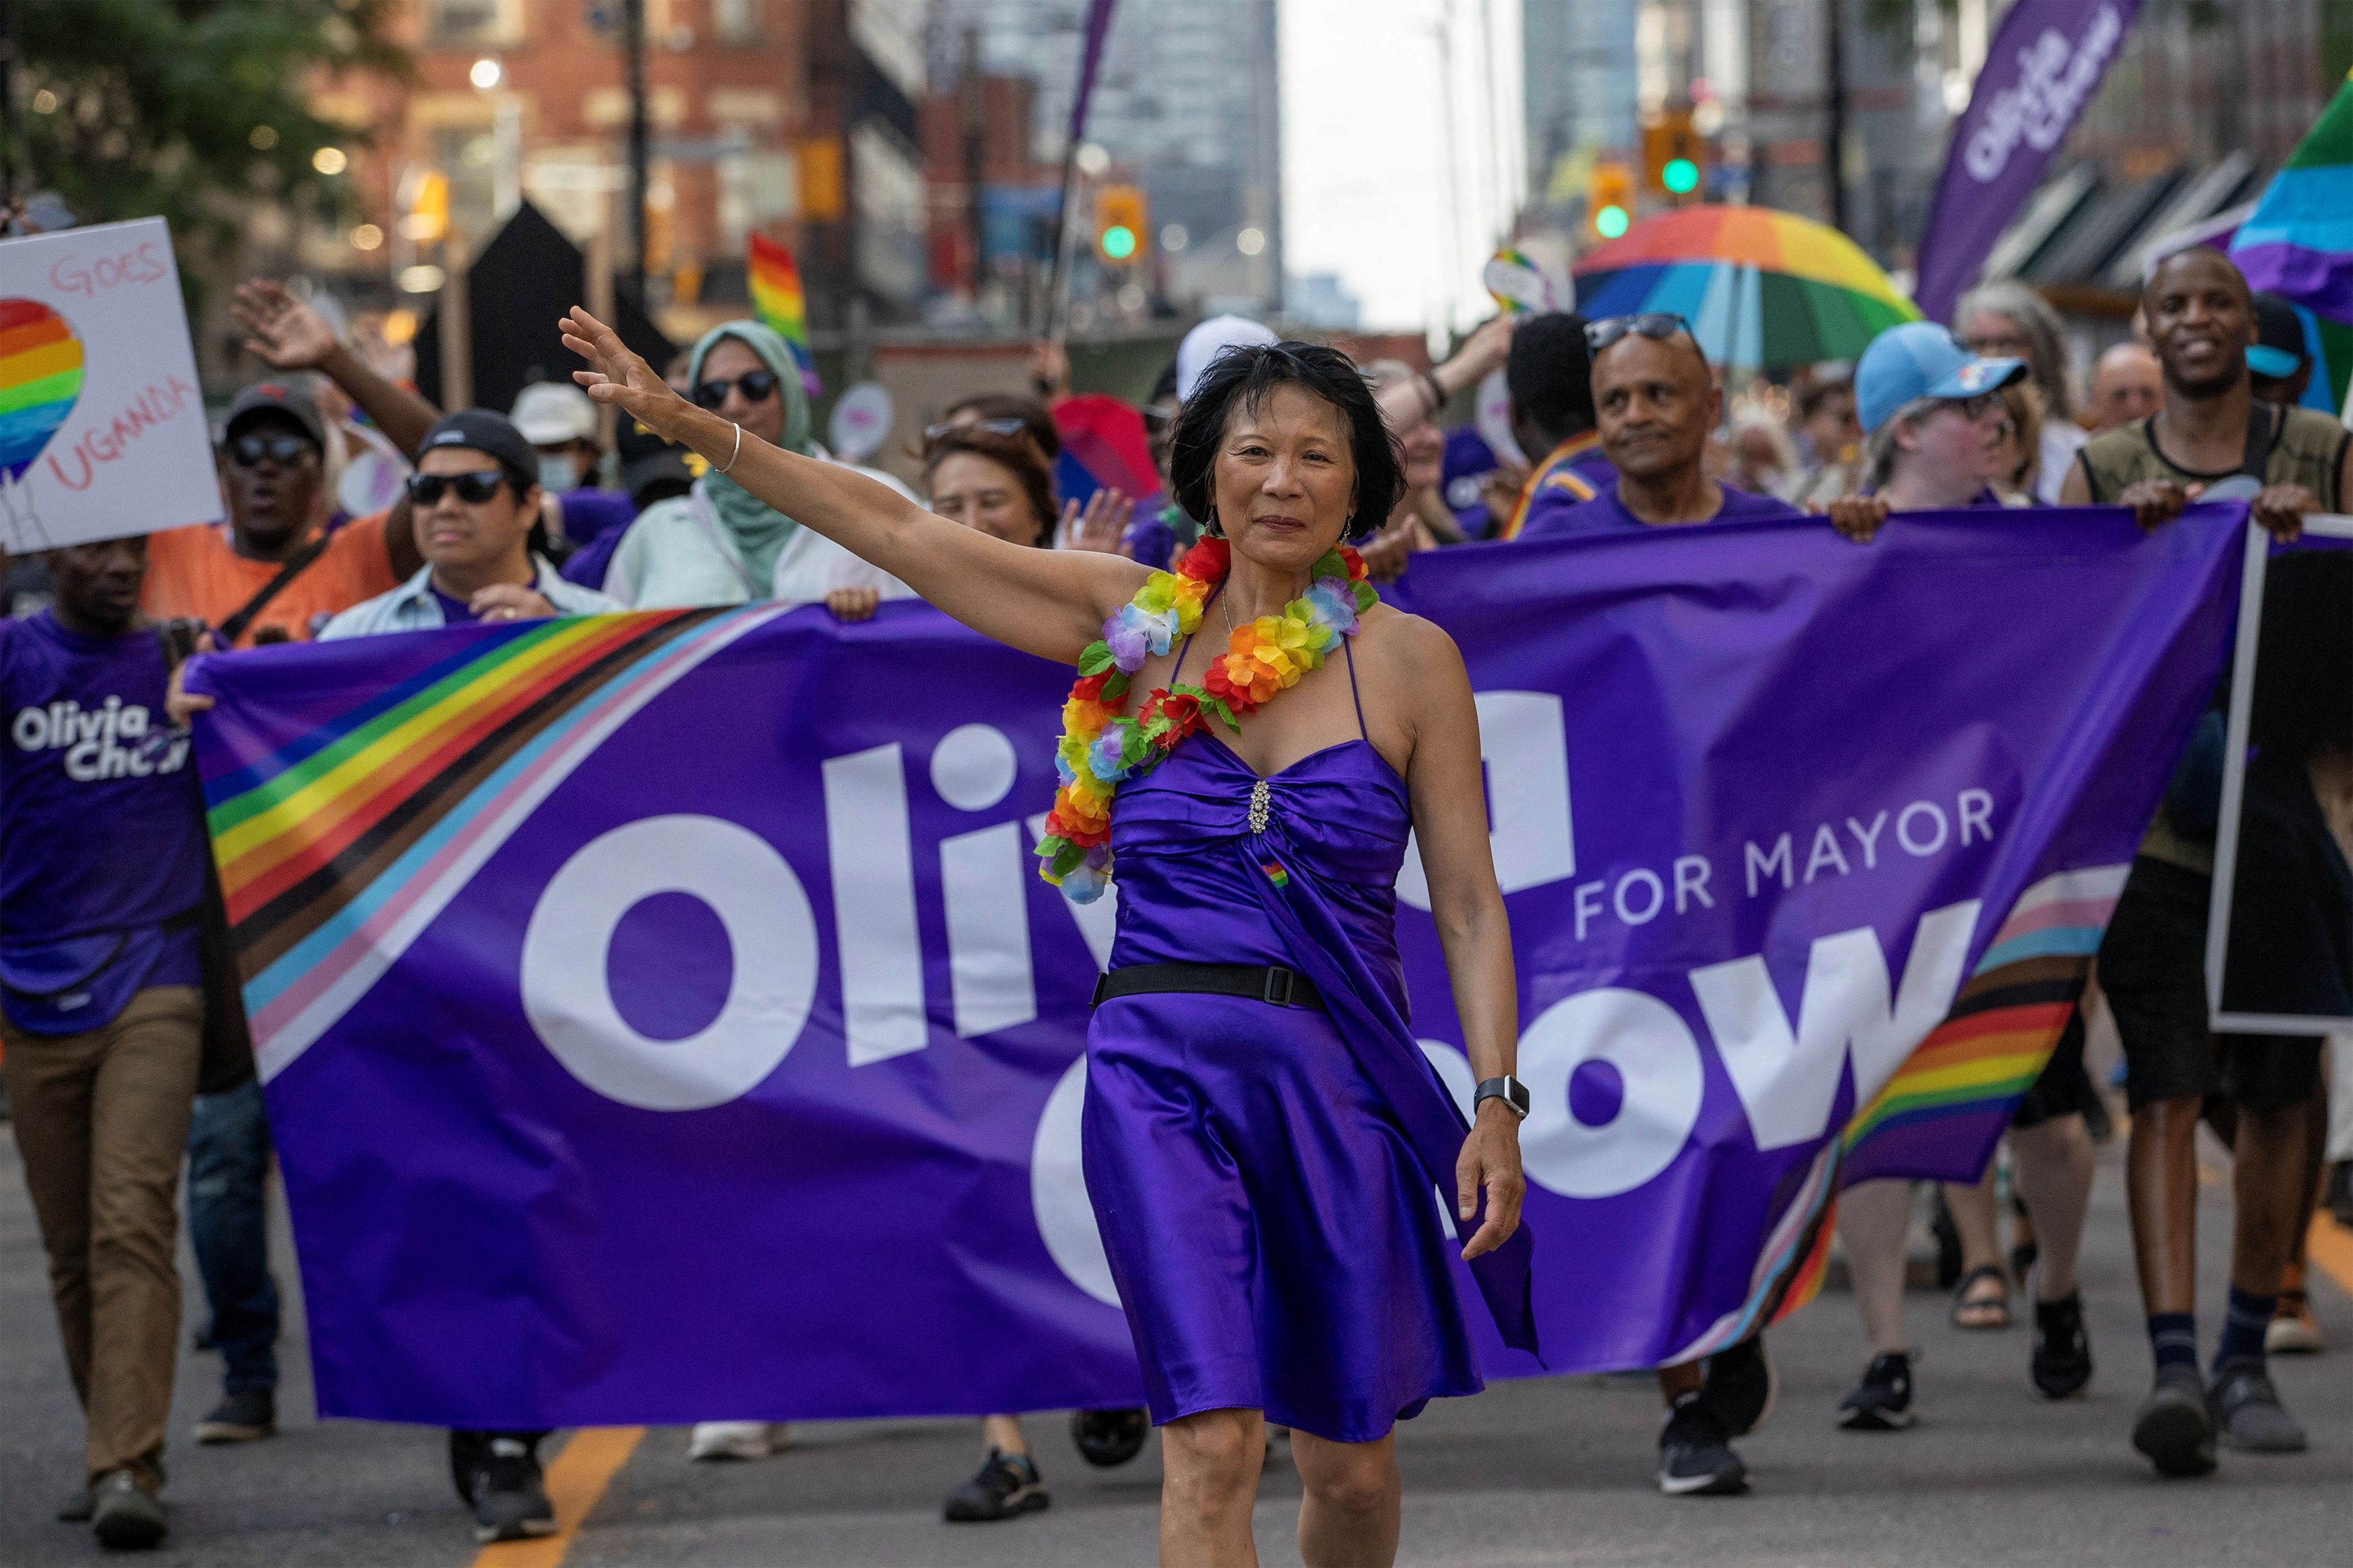 Ολίβια Τσόου: Ποια είναι η Σινοκαναδή πολιτικός που έγινε δήμαρχος στο Τορόντο - Υπόσχεται αριστερή πολιτική